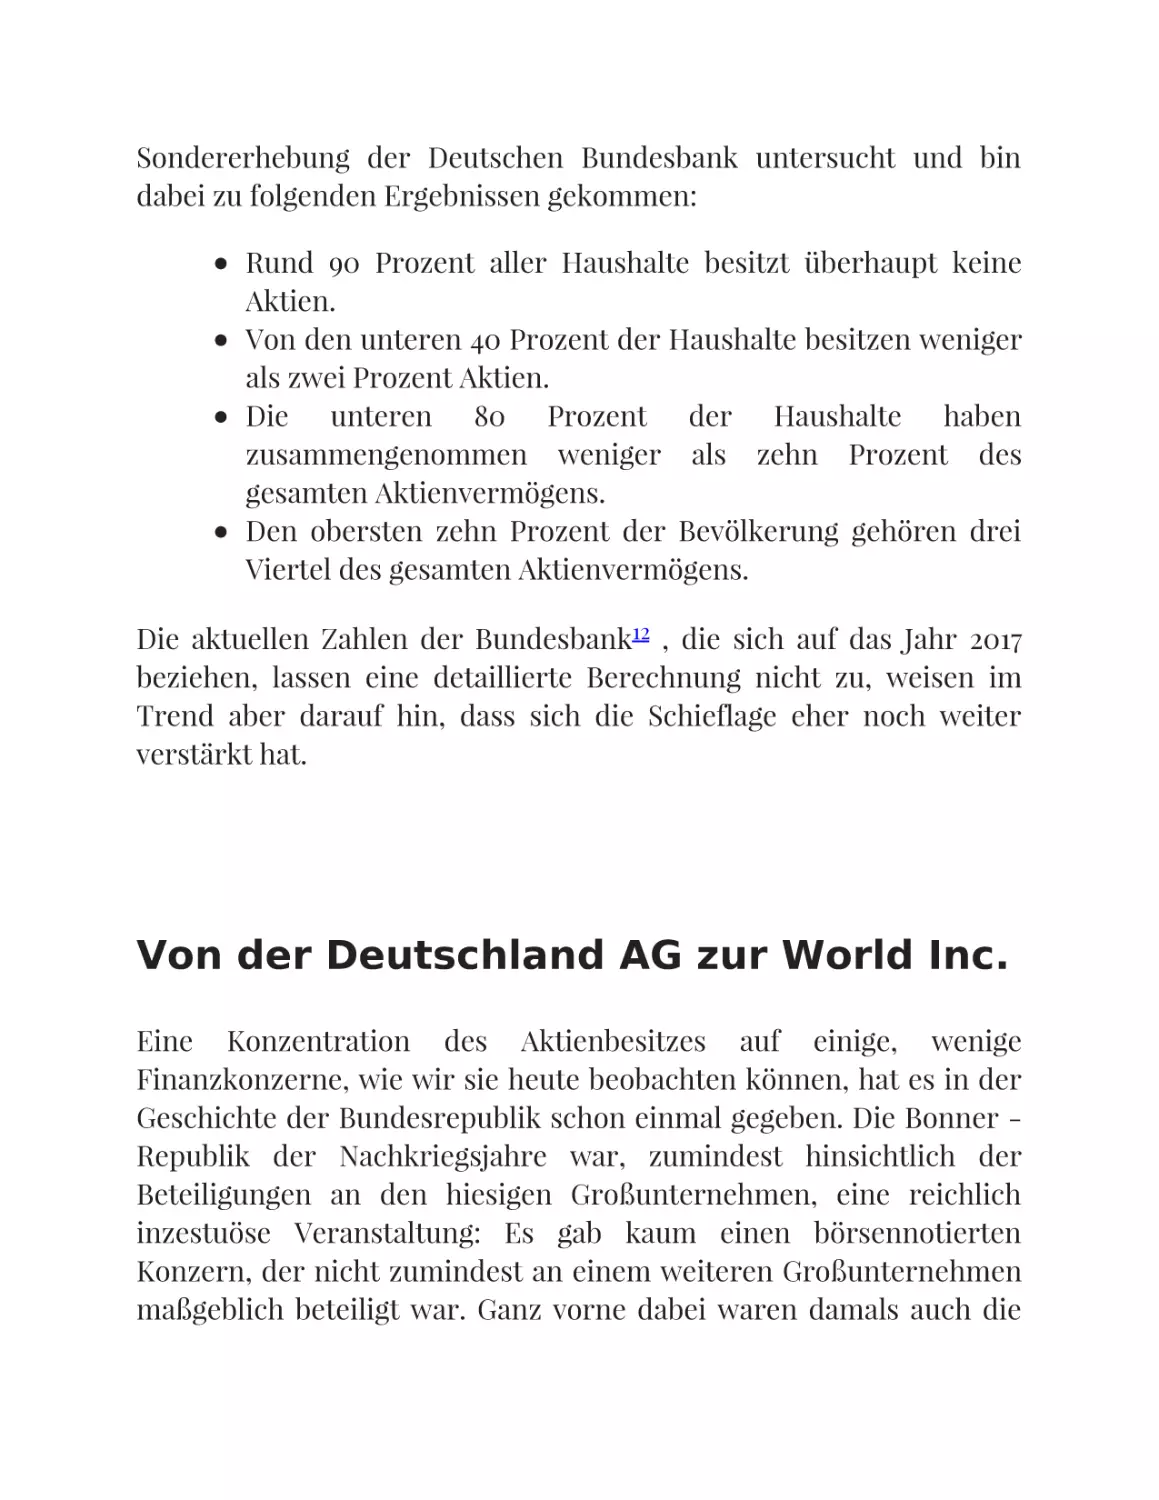 Von der Deutschland AG zur World Inc.